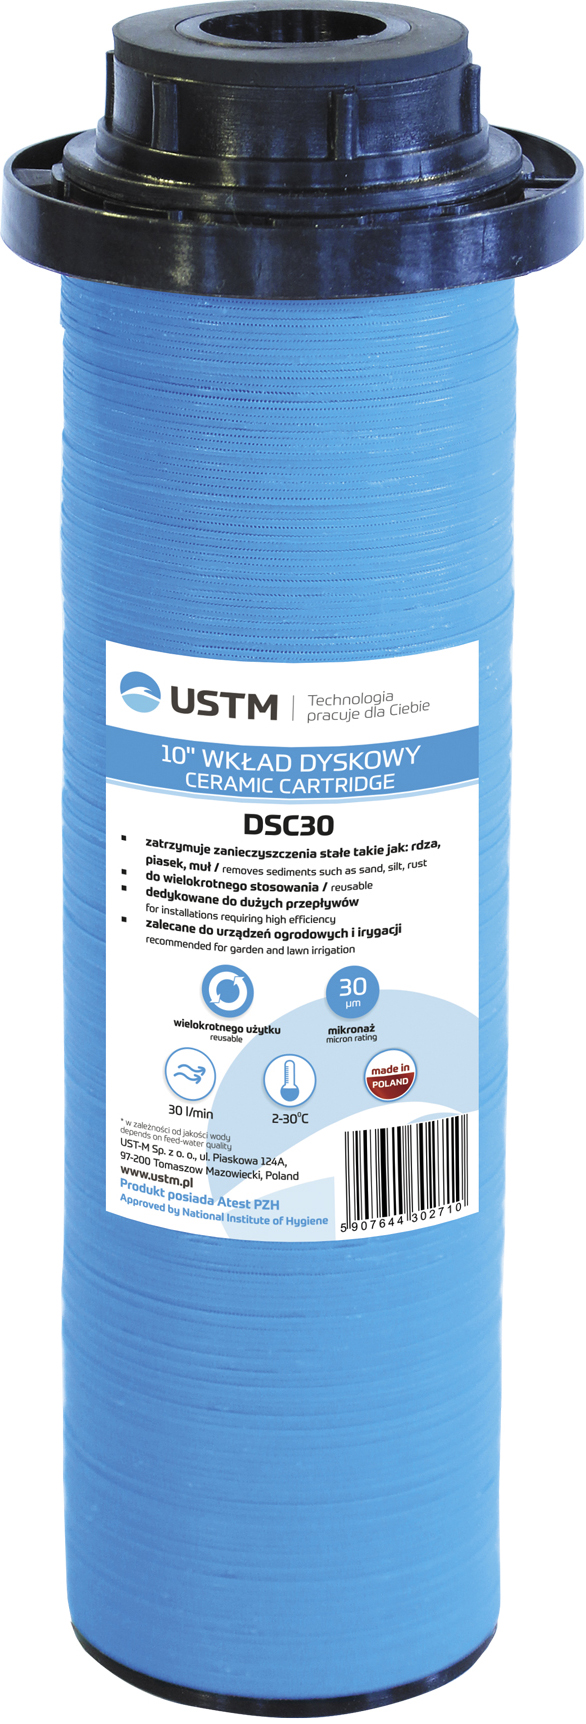 Картридж для фильтра USTM DSC в интернет-магазине, главное фото